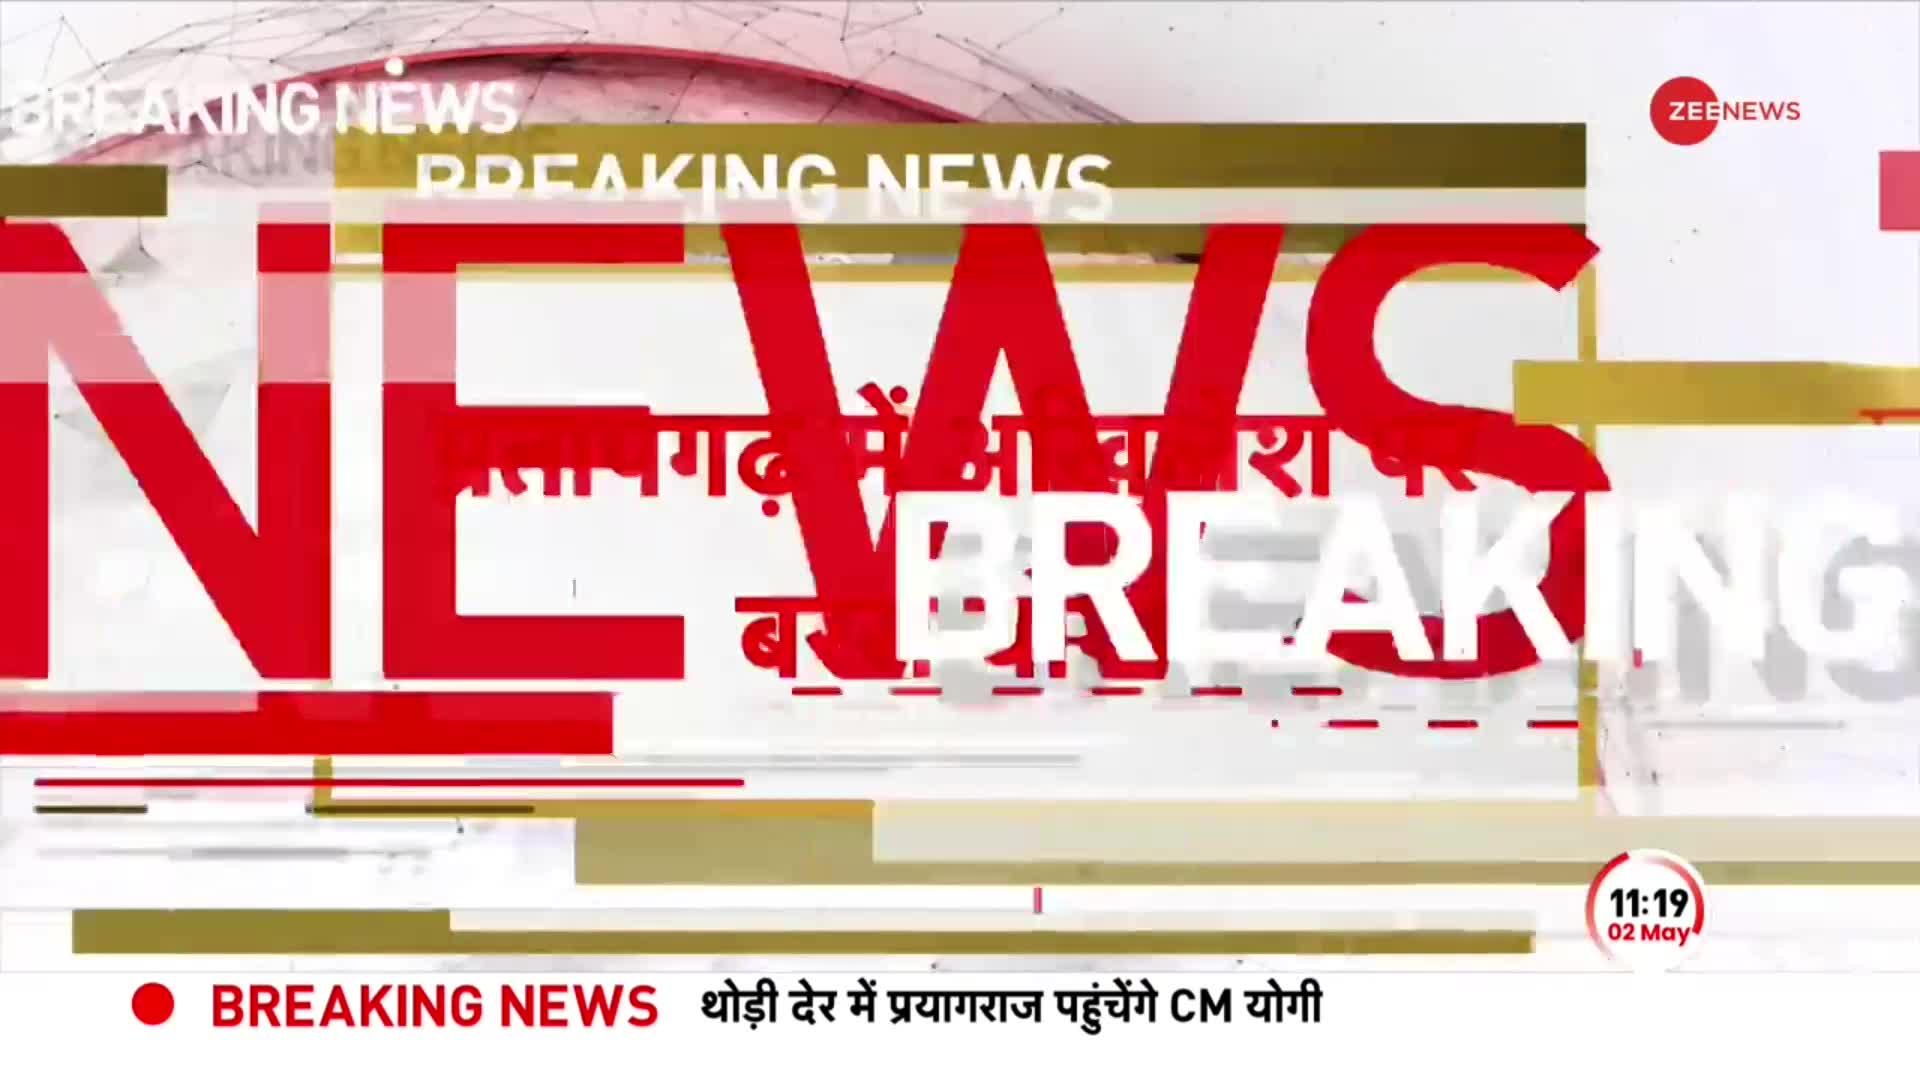 BREAKING NEWS: Pratapgarh में Akhilesh Yadav पर बरसे CM Yogi, 'SP ने युवाओं के हाथ में तमंचे दिए'